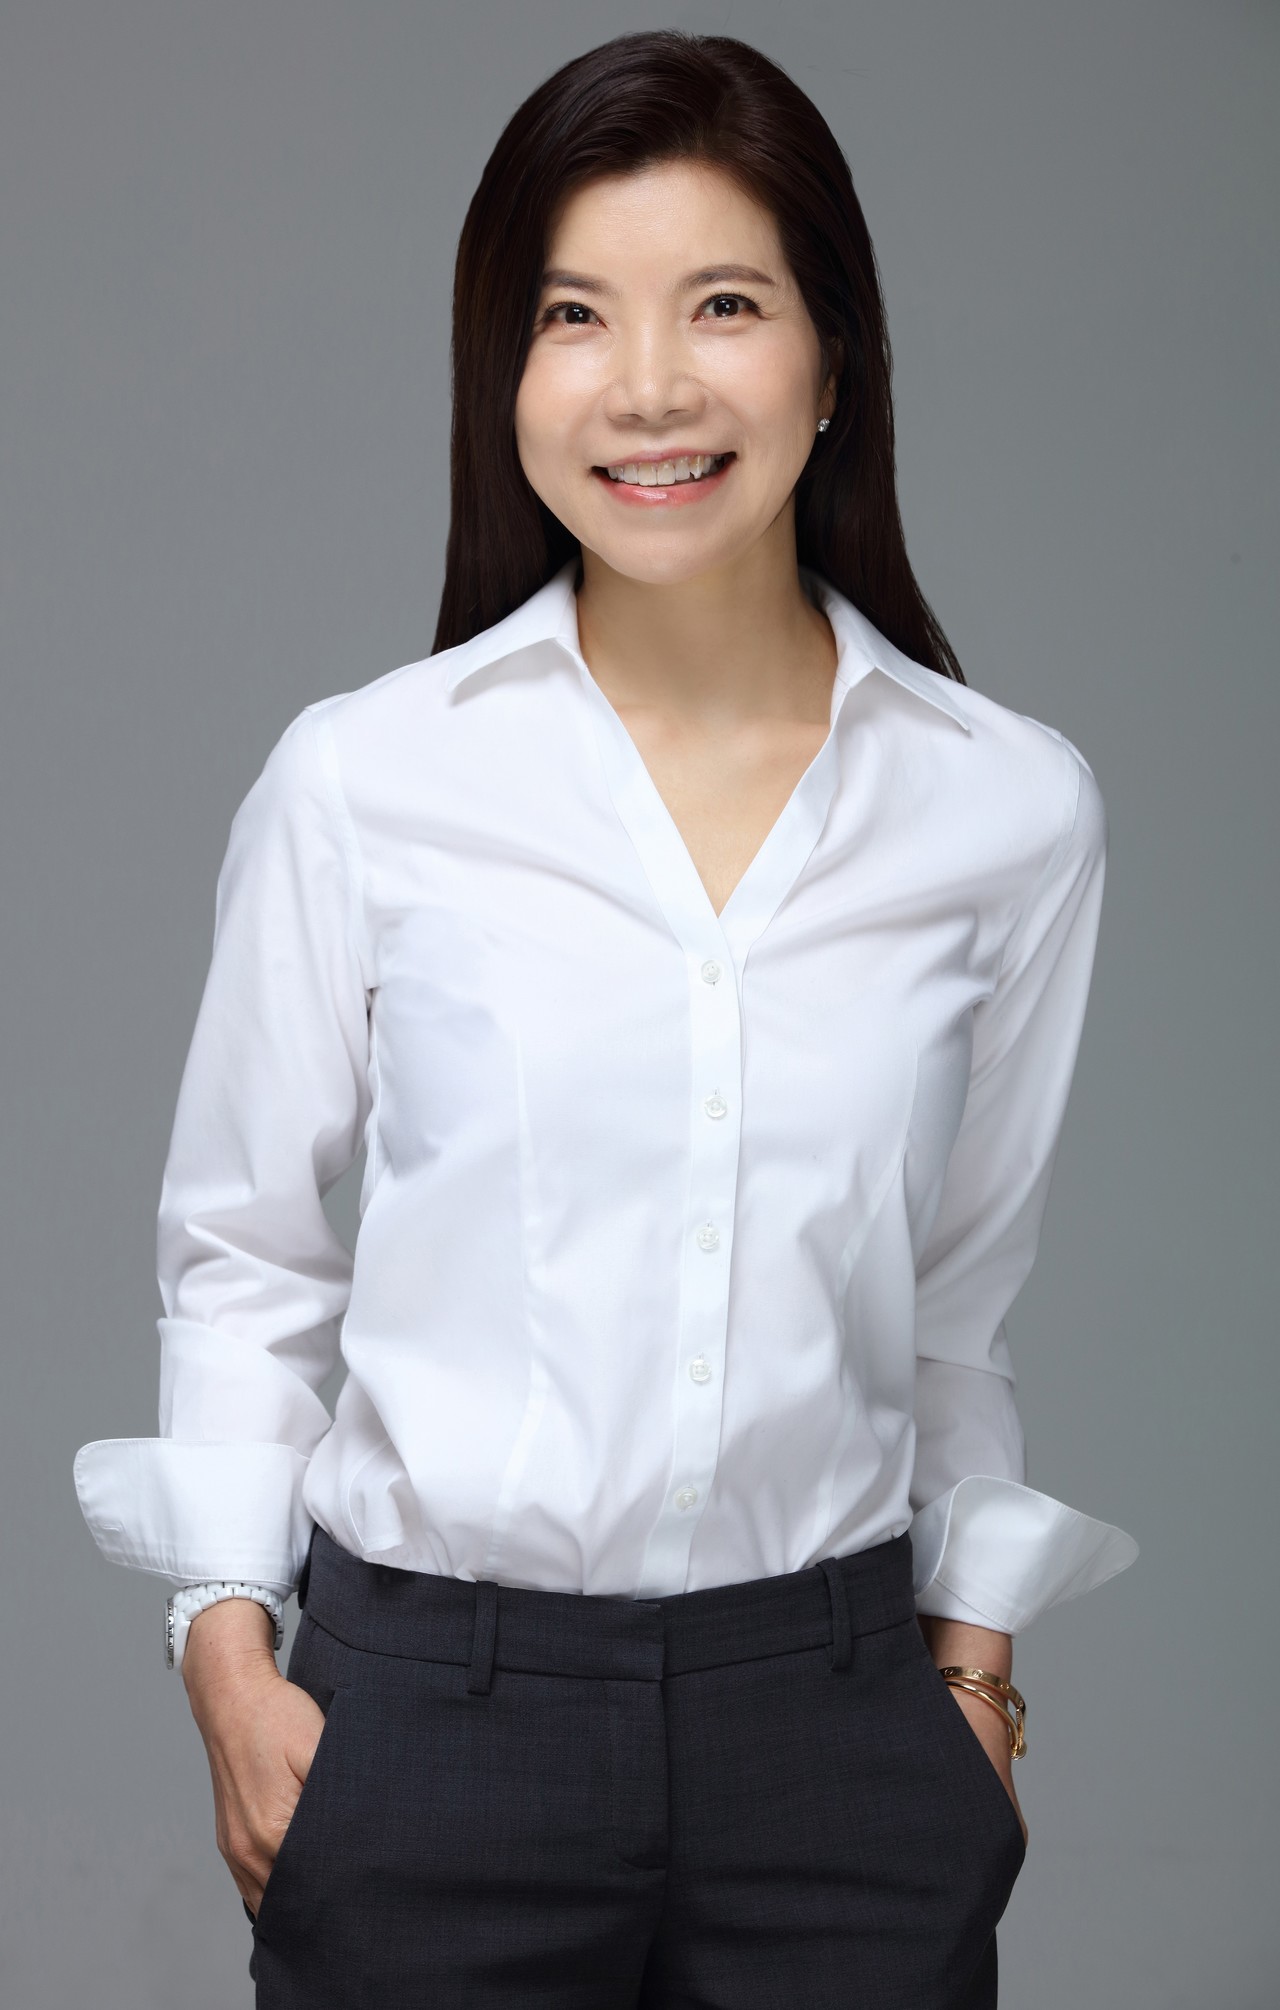 에베레스트메디신 코리아 박혜선 대표